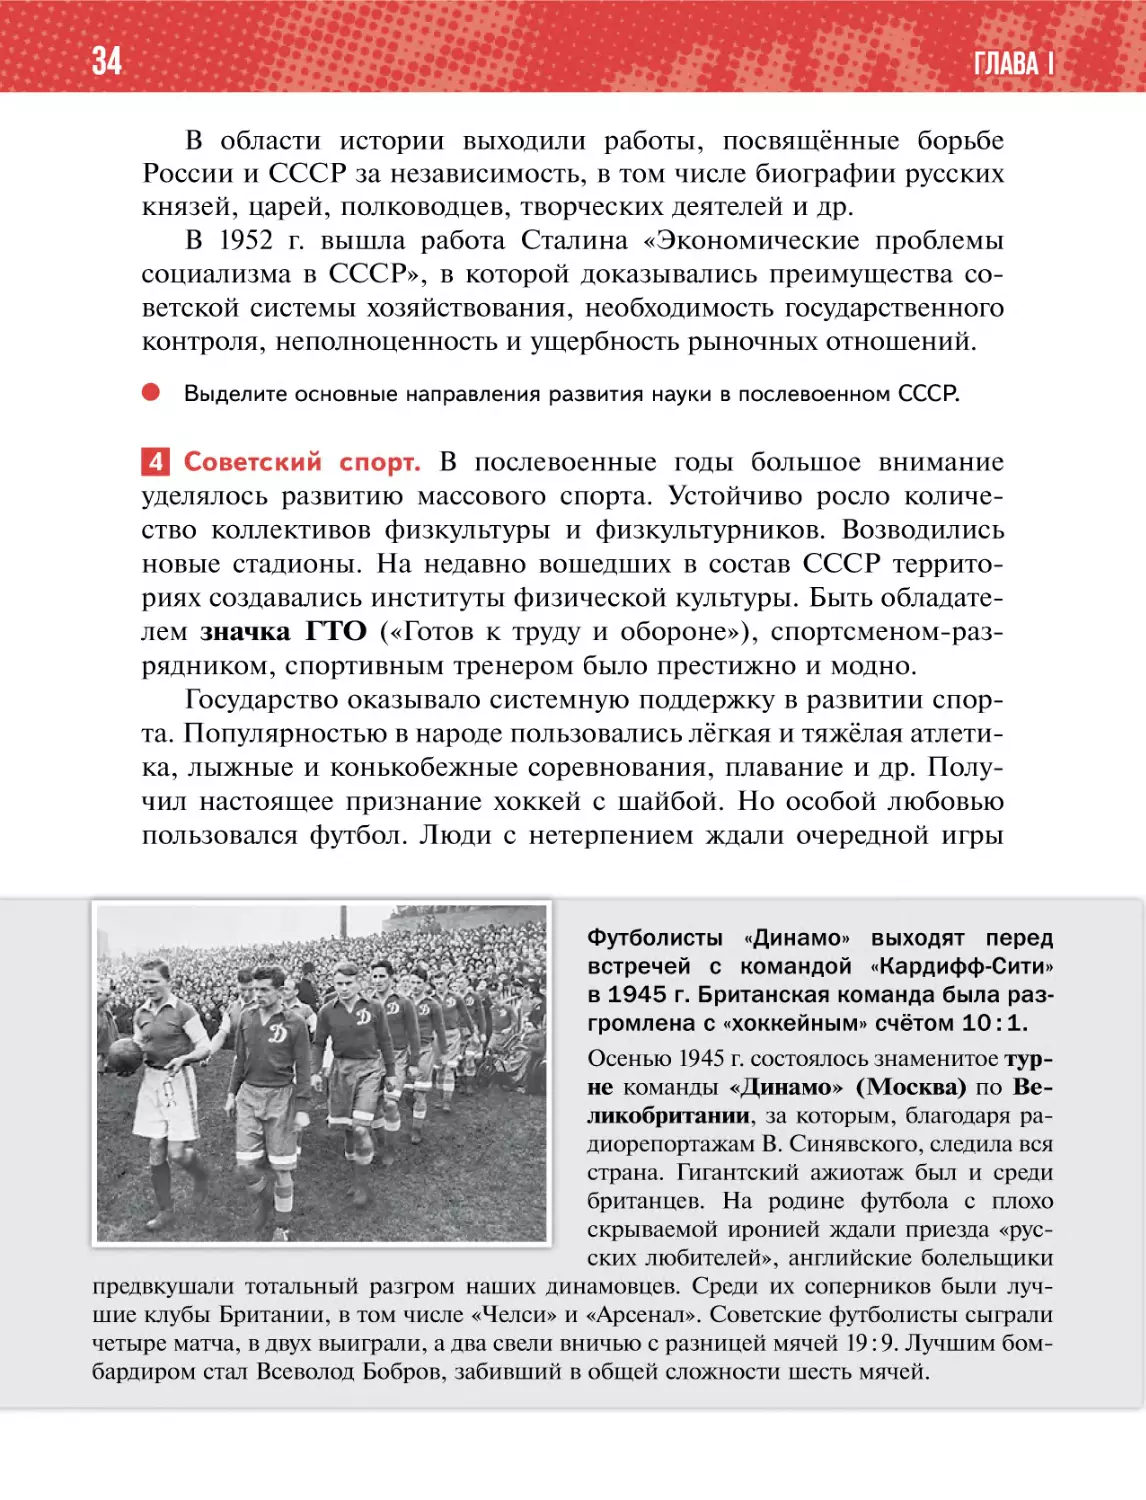 4 Советский спорт.